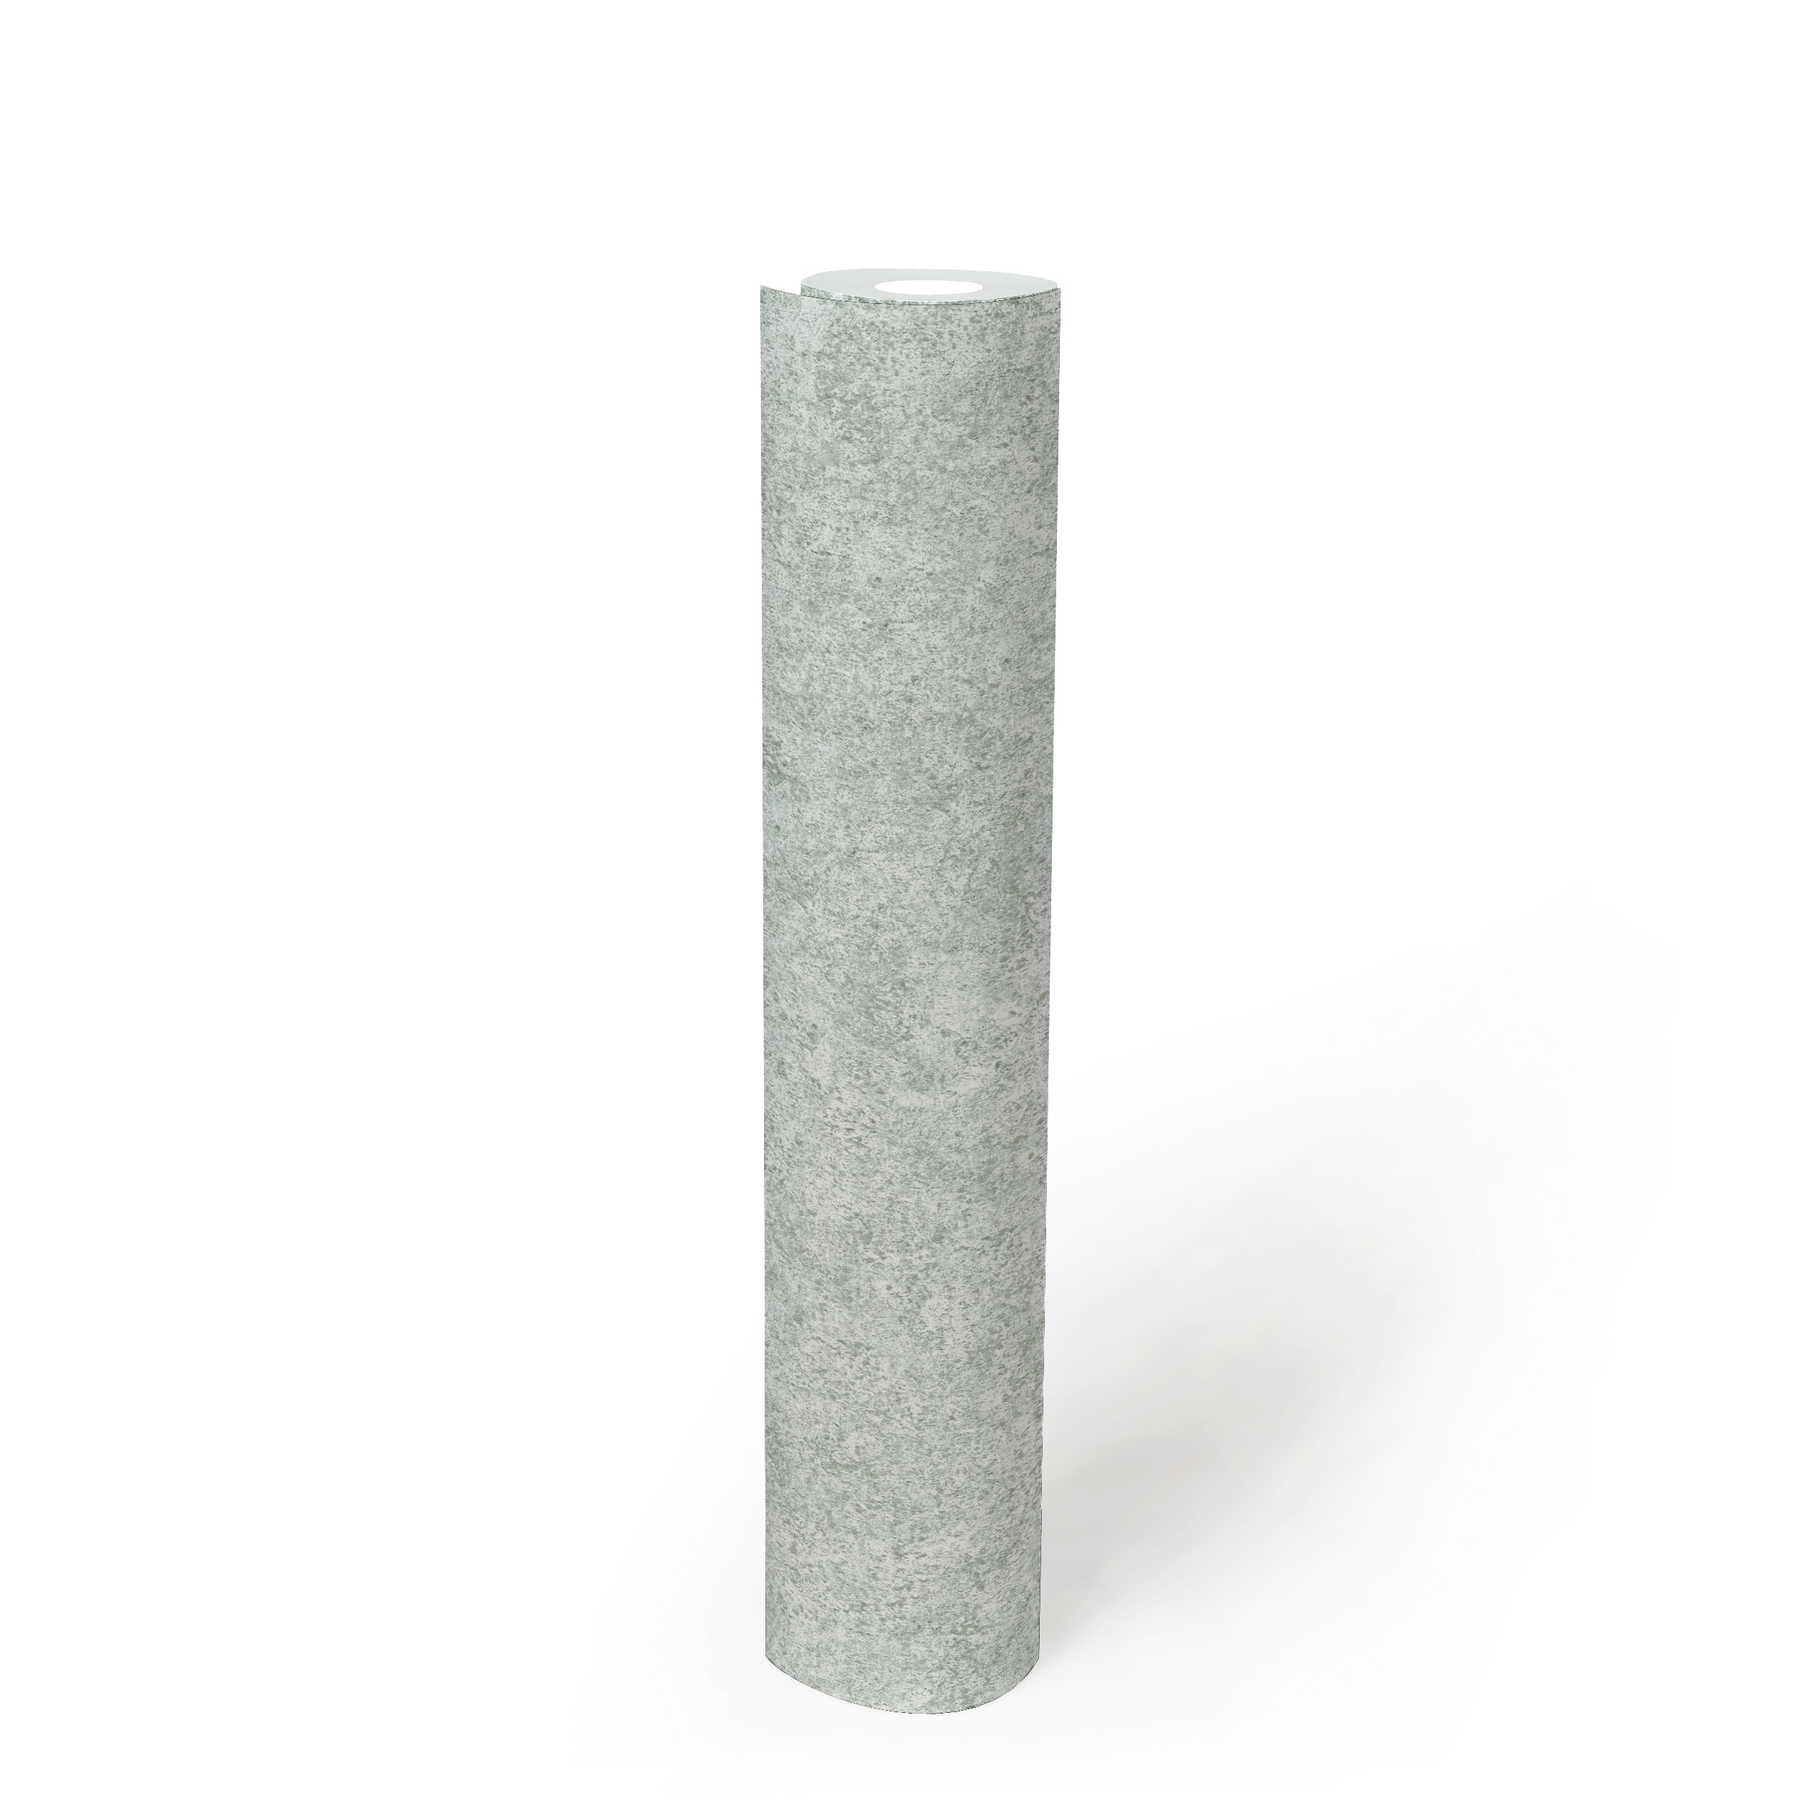             Melierte Tapete Grau mit marmorierter Steinoptik
        